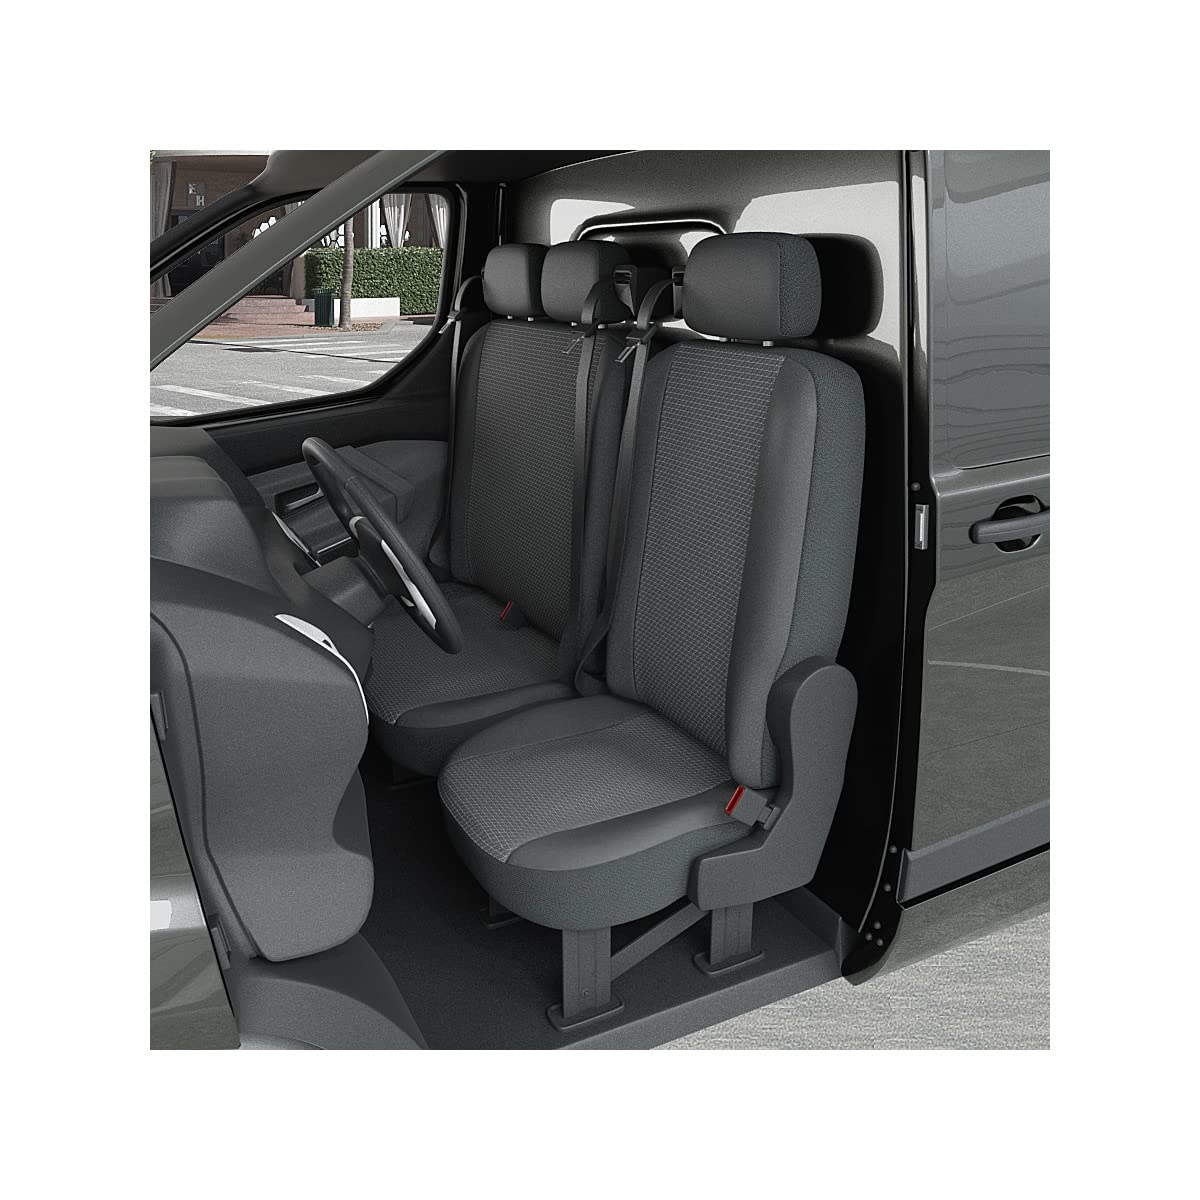 DBS 1013199 Sitzbezug für Auto/Nutzfahrzeuge, Kunstleder, schnelle Montage, kompatibel mit Airbag-Isofix-1013199